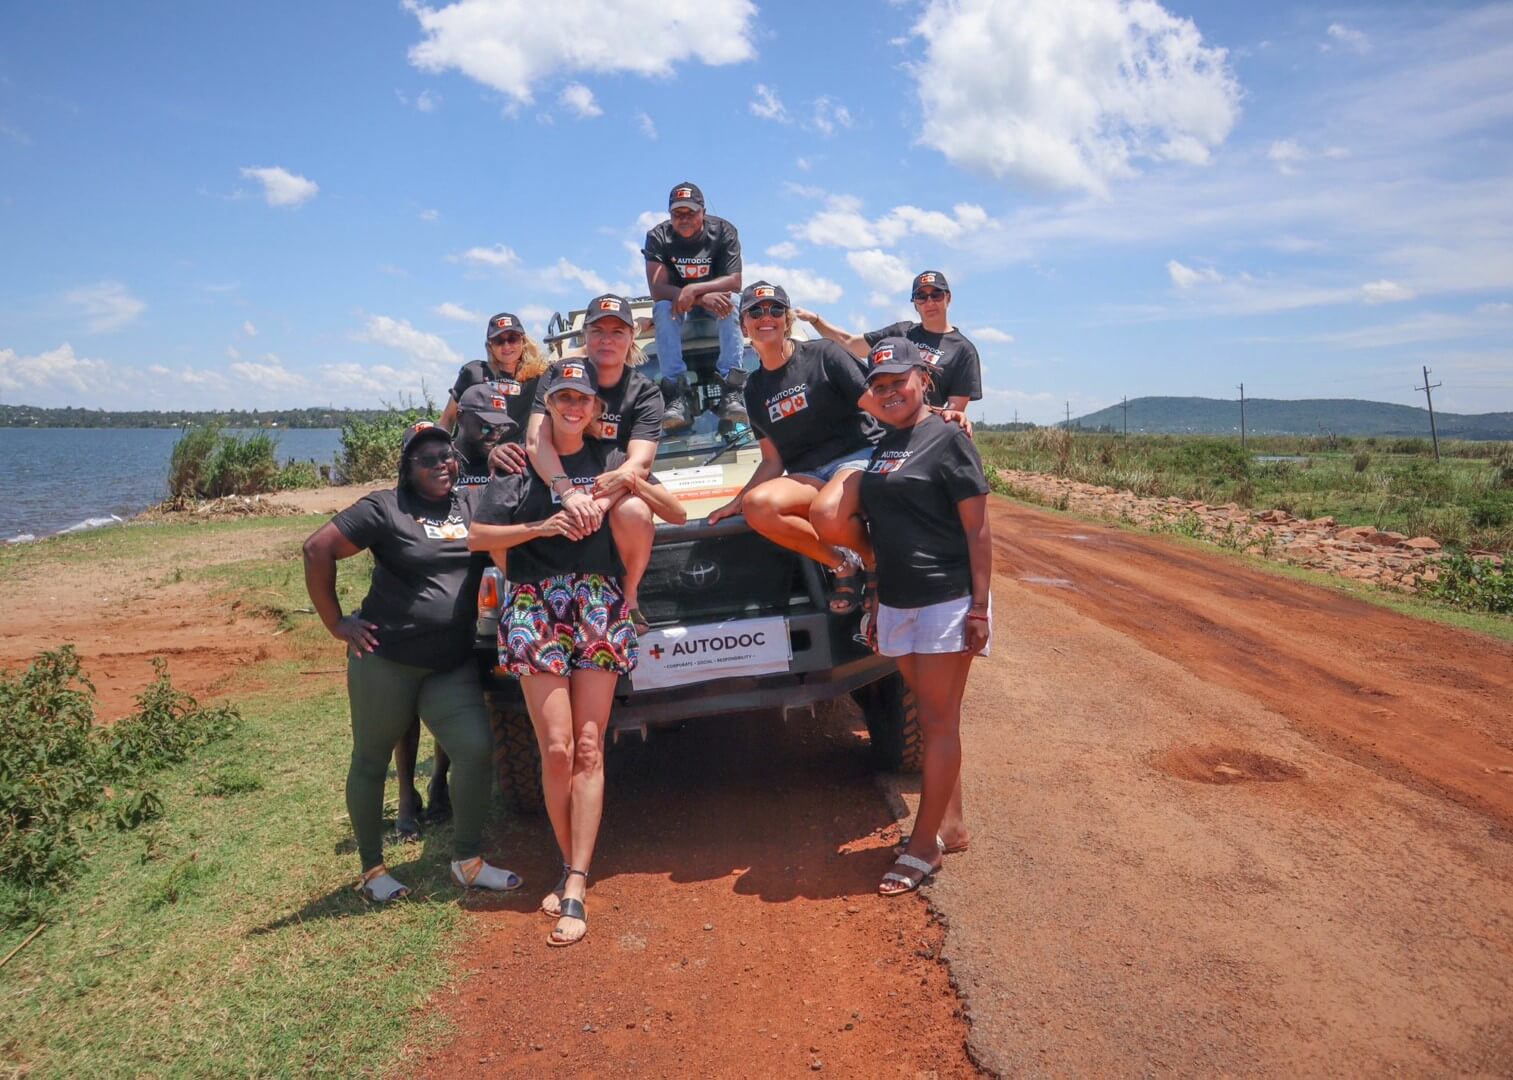 Victoria Rallye - Eine Fahrt durch Ostafrika im Zeichen des Frauenempowerment